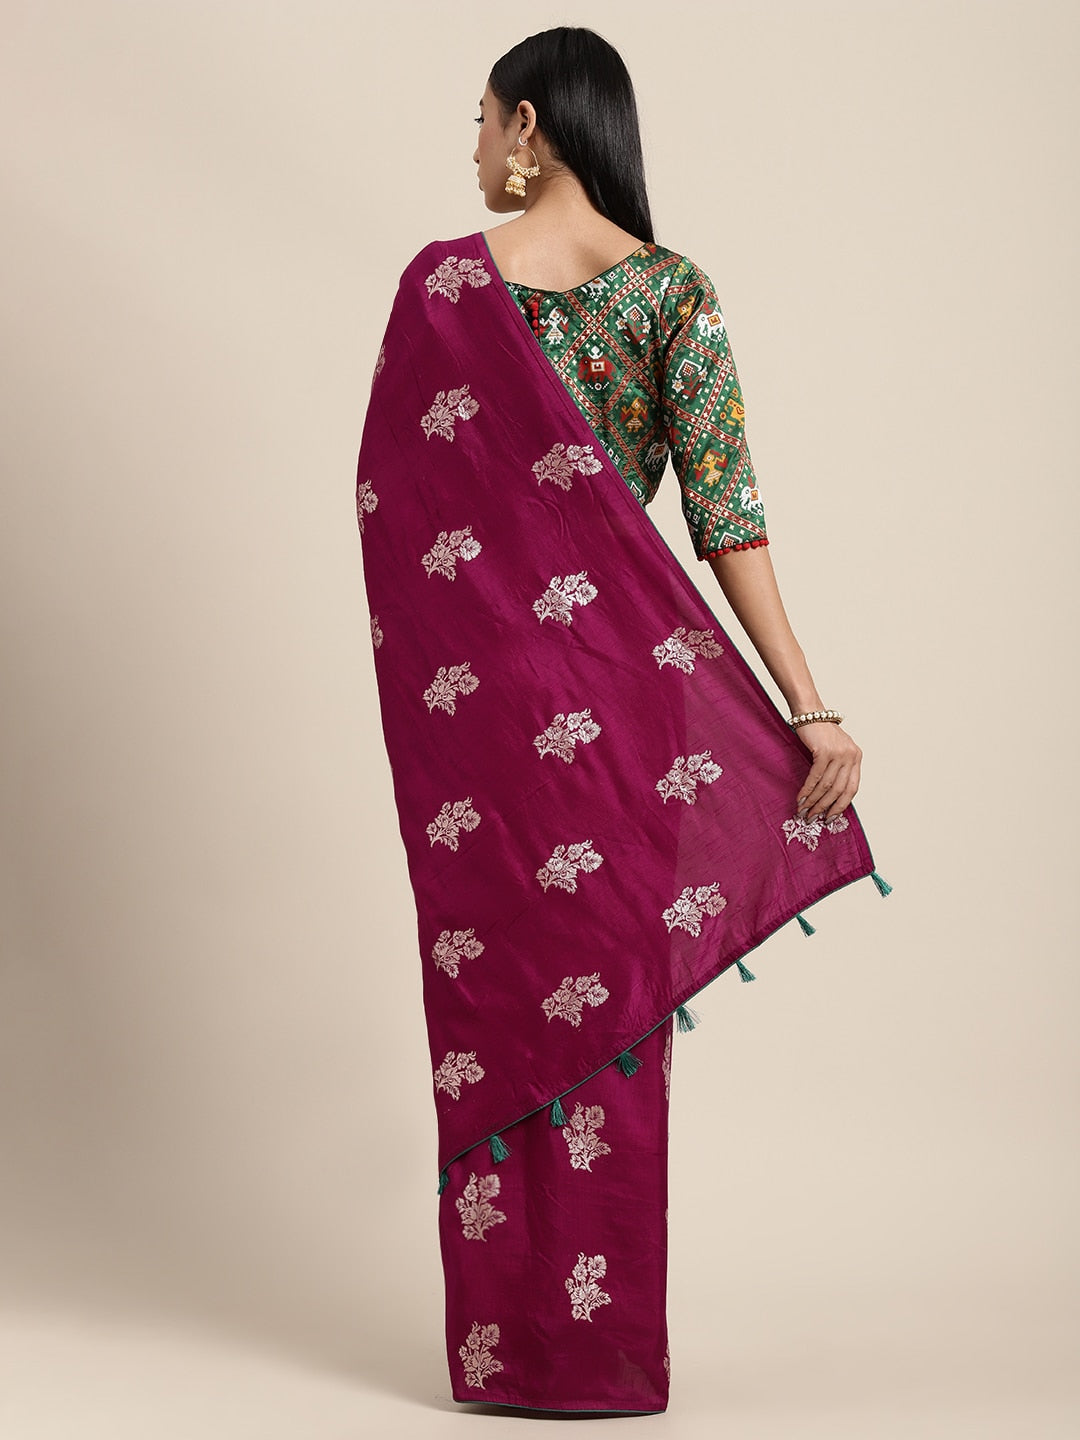 Neeru's wine color, banaras fabric saree